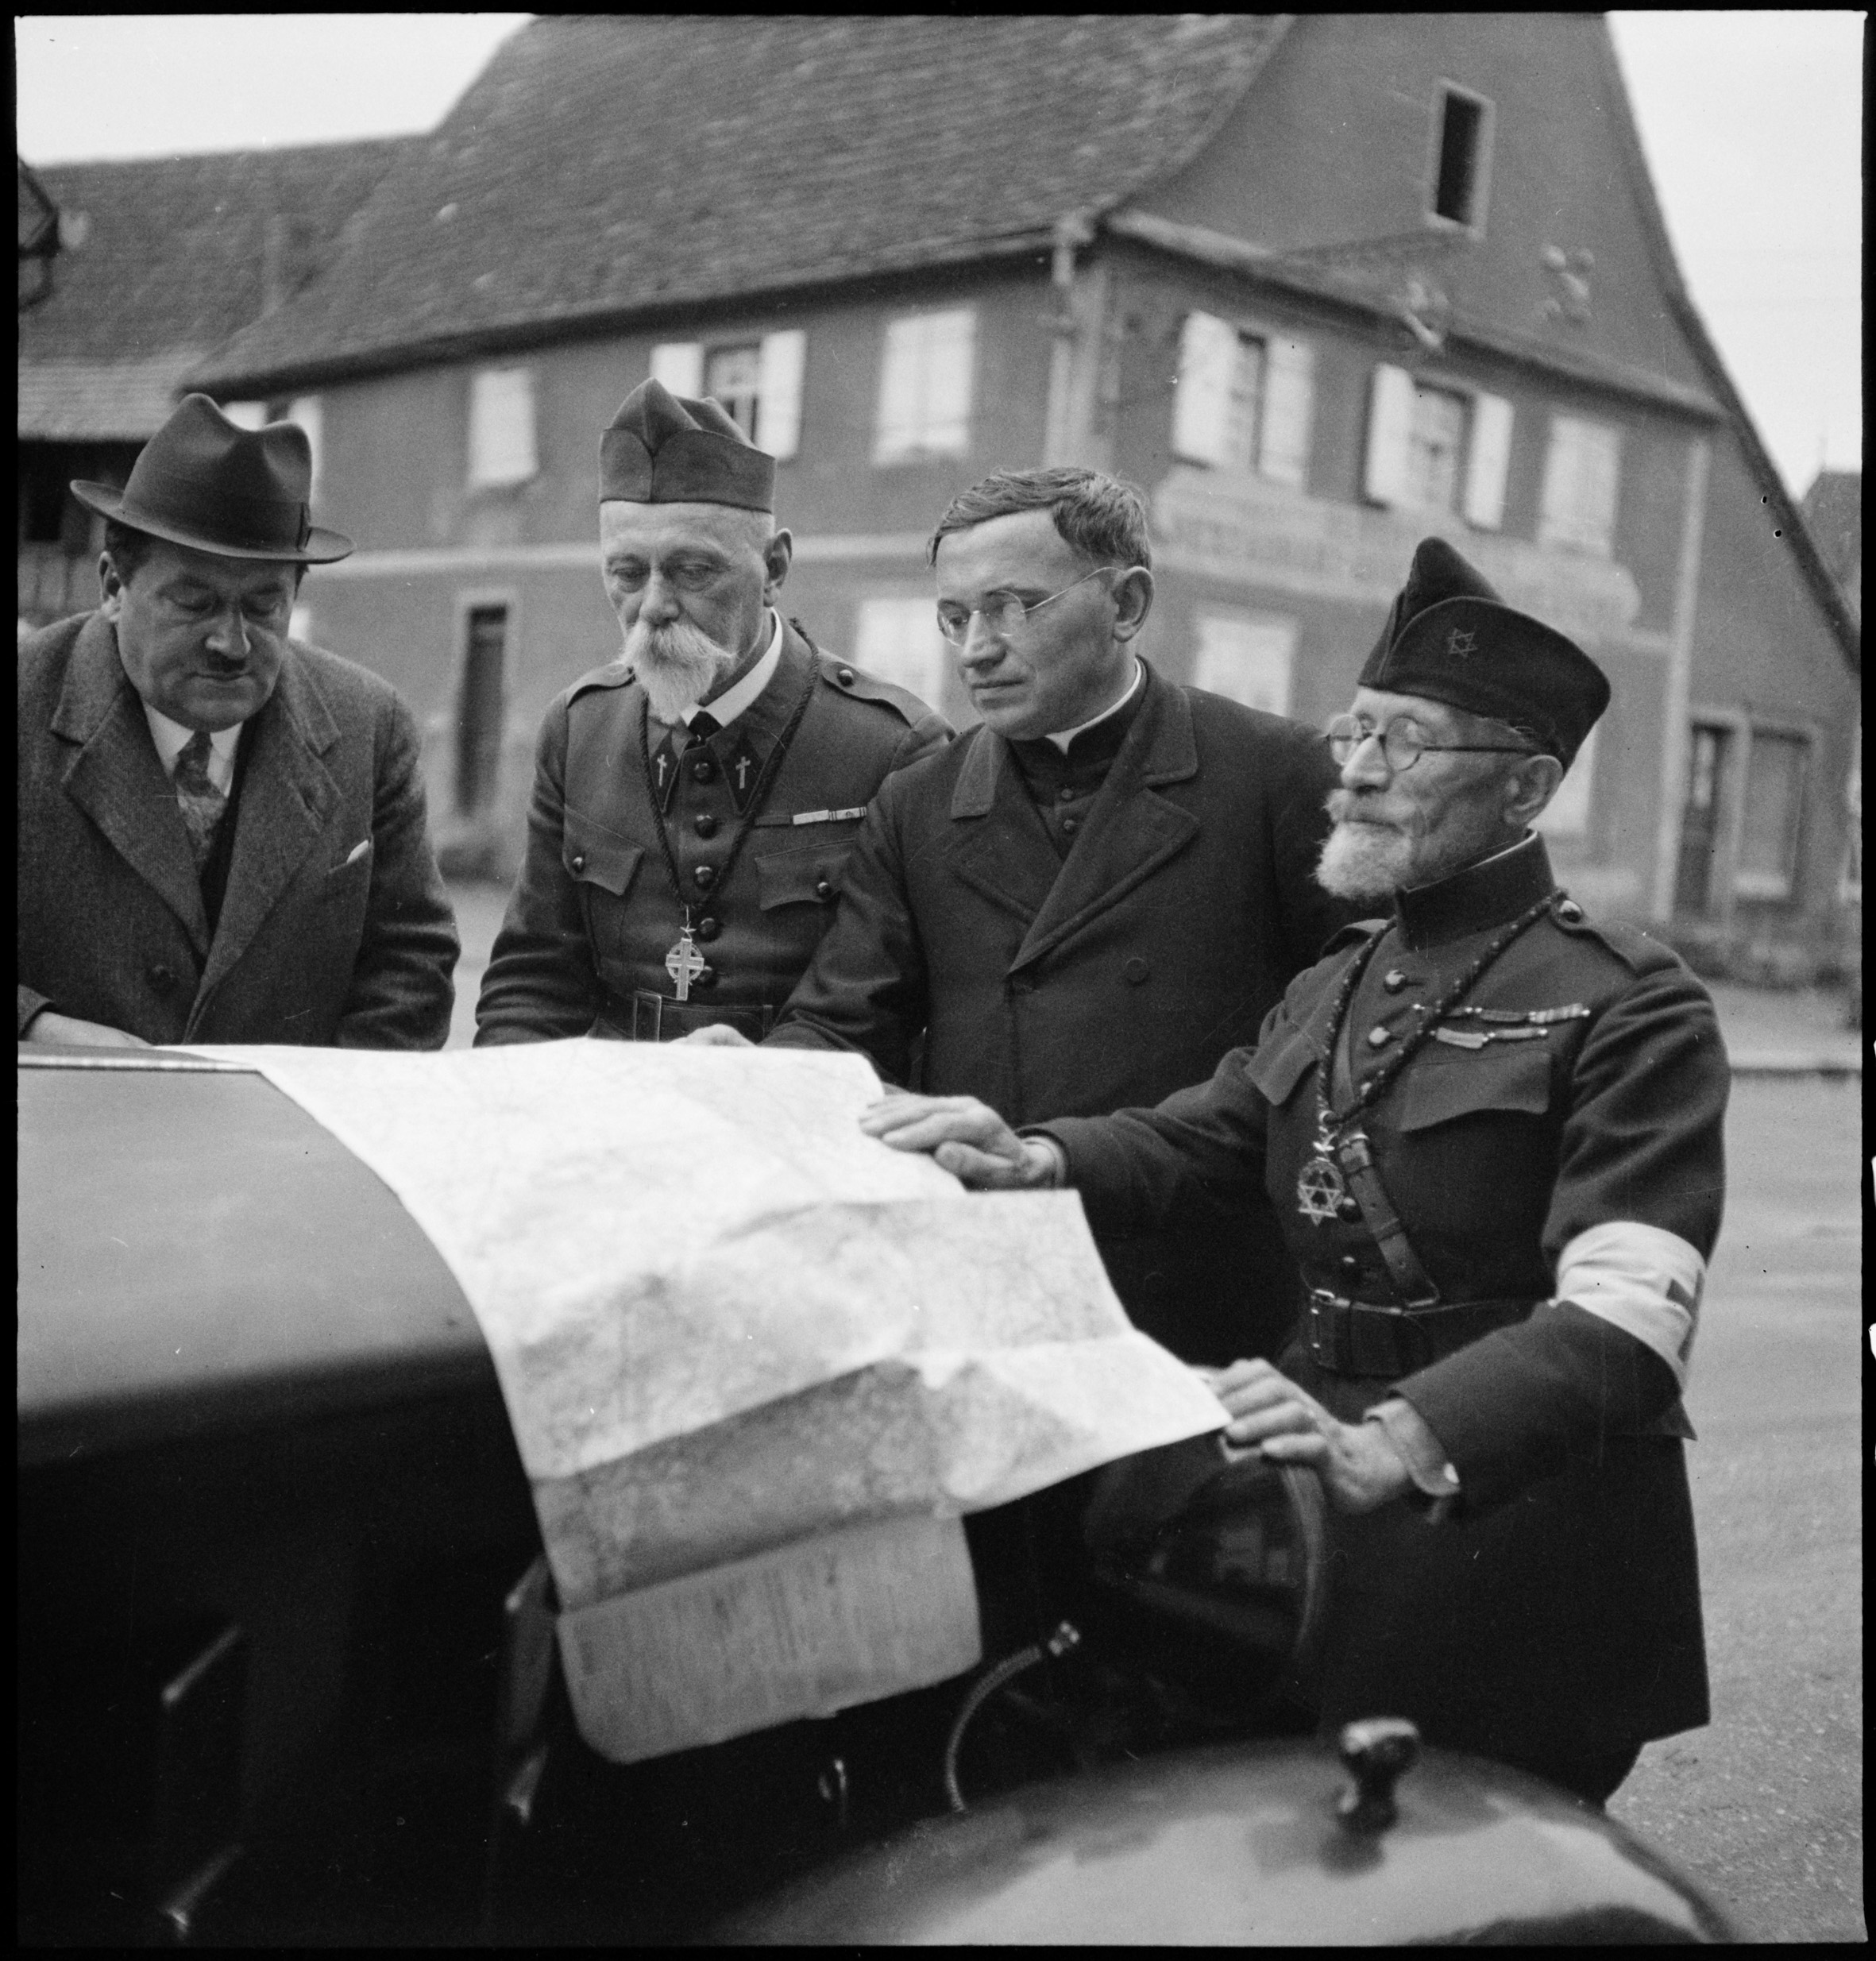 1939, Alsace : 4 aumôniers de confession différente consultent une carte.